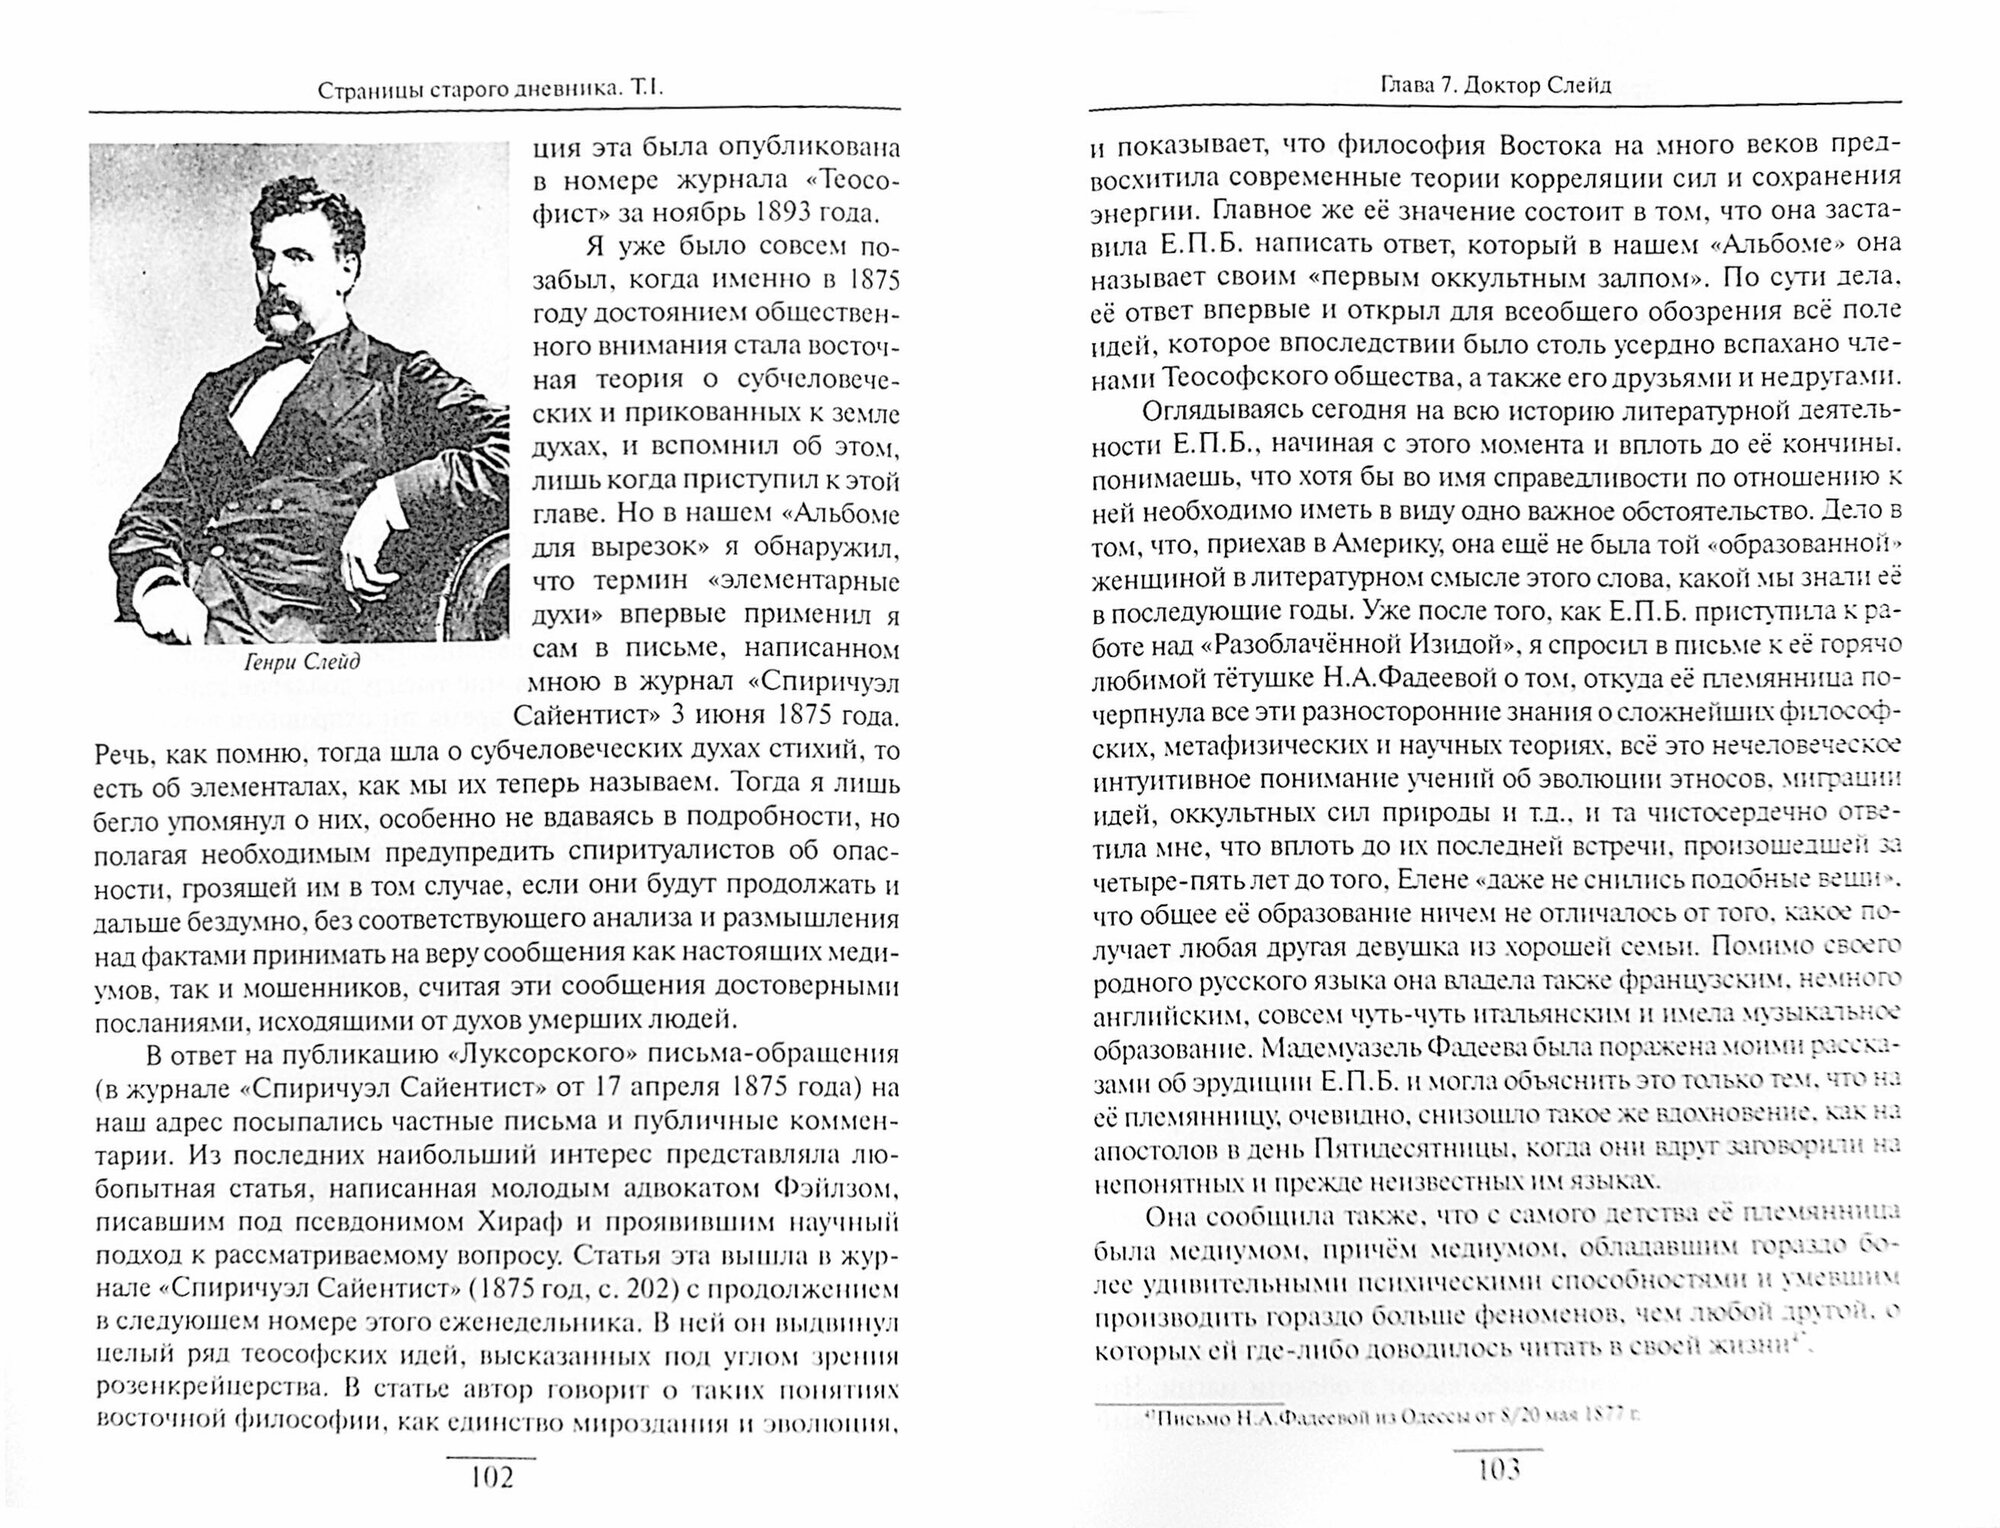 Страницы старого дневника. Фрагменты (1874-1878). Том 1 - фото №2